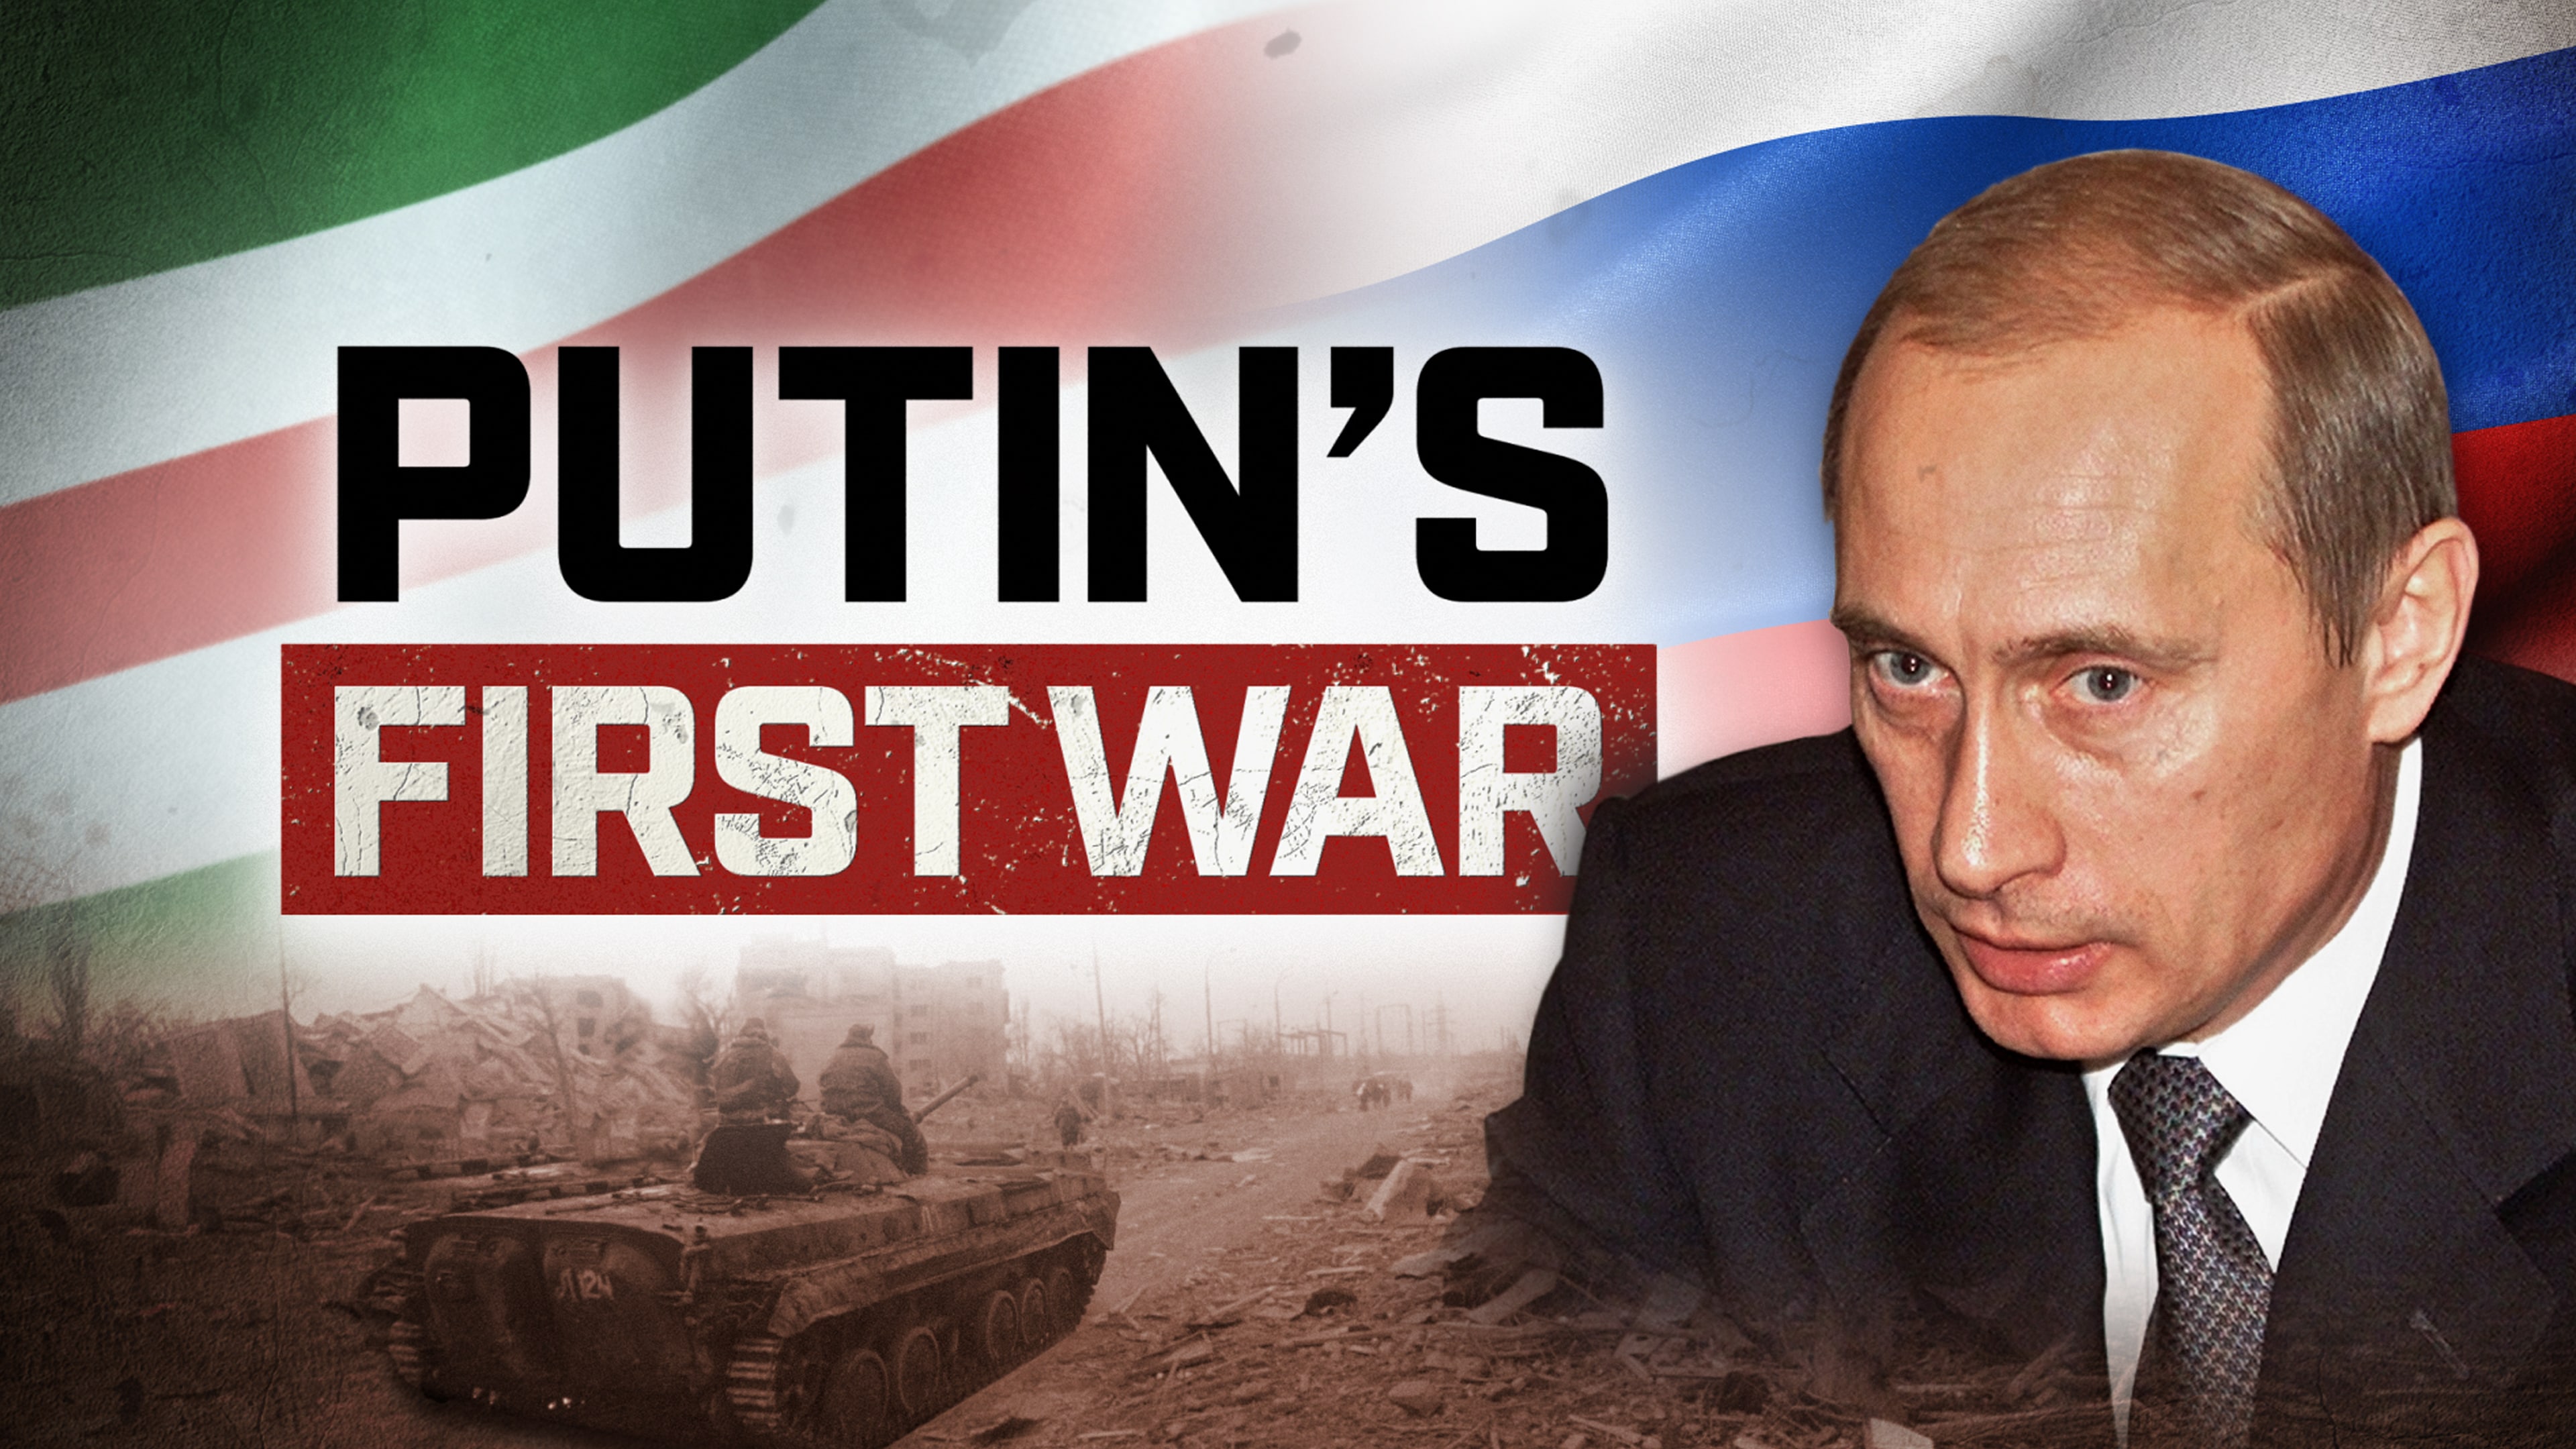 Putin's First War